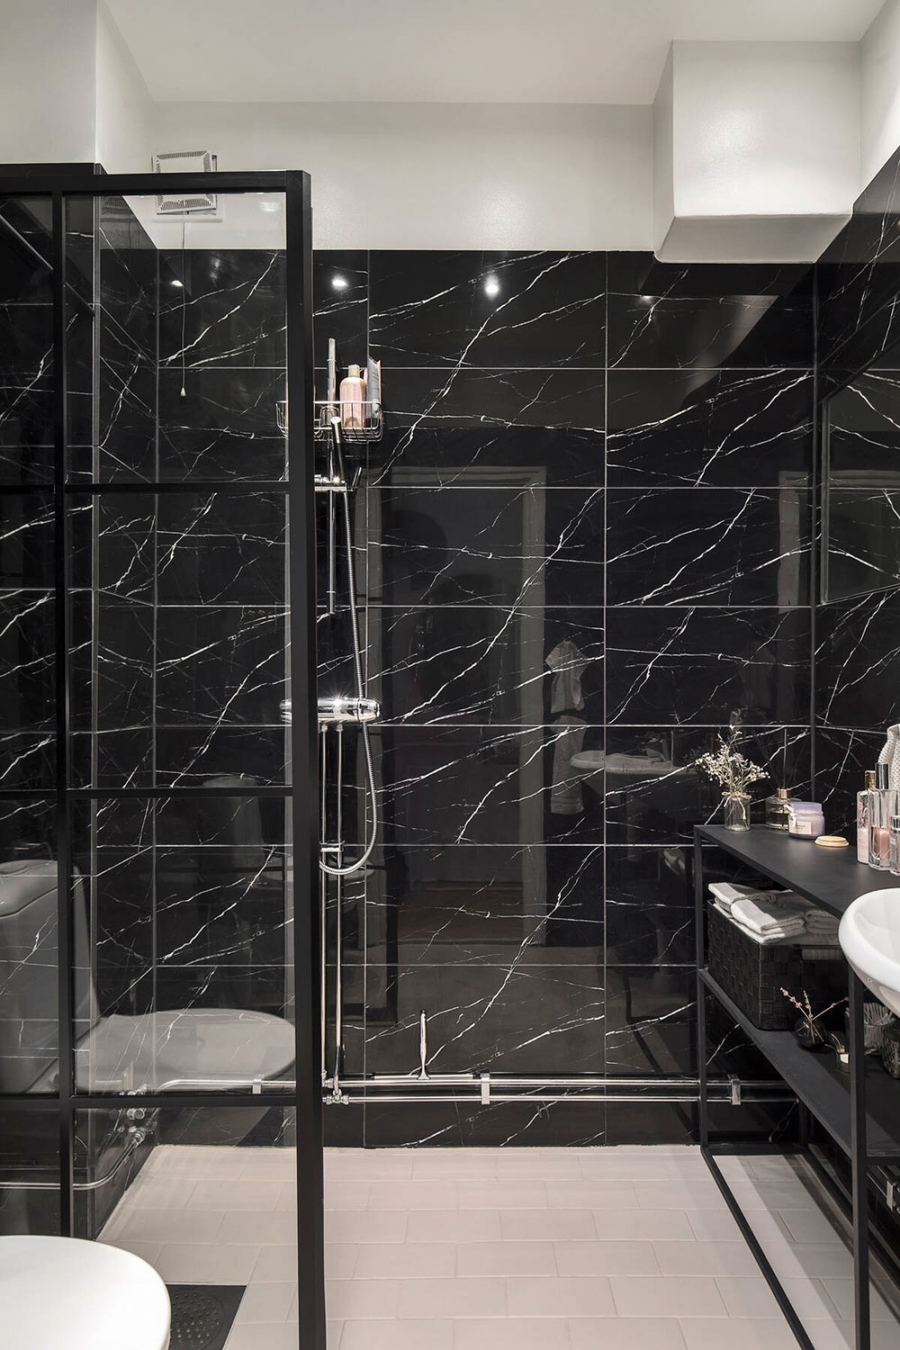 Buồng tắm đứng và nhà vệ sinh được phân vùng với nhau bằng cửa kính trượt trong suốt. Lựa chọn gạch lát nền và sơn trần màu trắng là giải pháp thông minh để phòng tắm không bị chiếm hữu hoàn toàn bởi sắc đen.